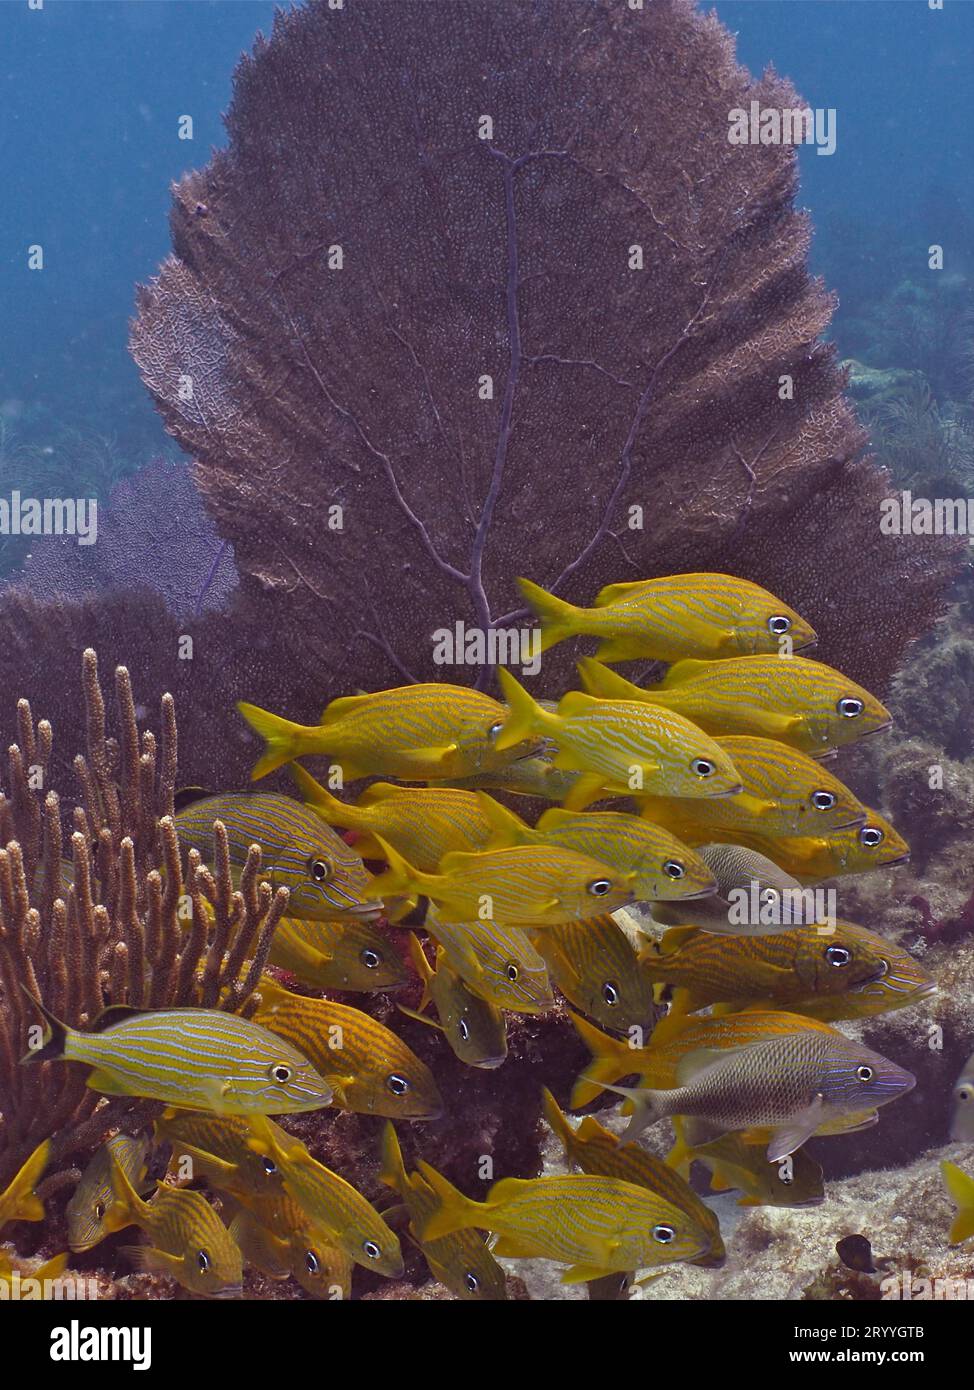 Gruppo di grunt francesi (Haemulon flavolineatum) nel tipico paesaggio caraibico della barriera corallina con ventola di mare comune (Gorgonia ventalina). Sito di immersione John Foto Stock